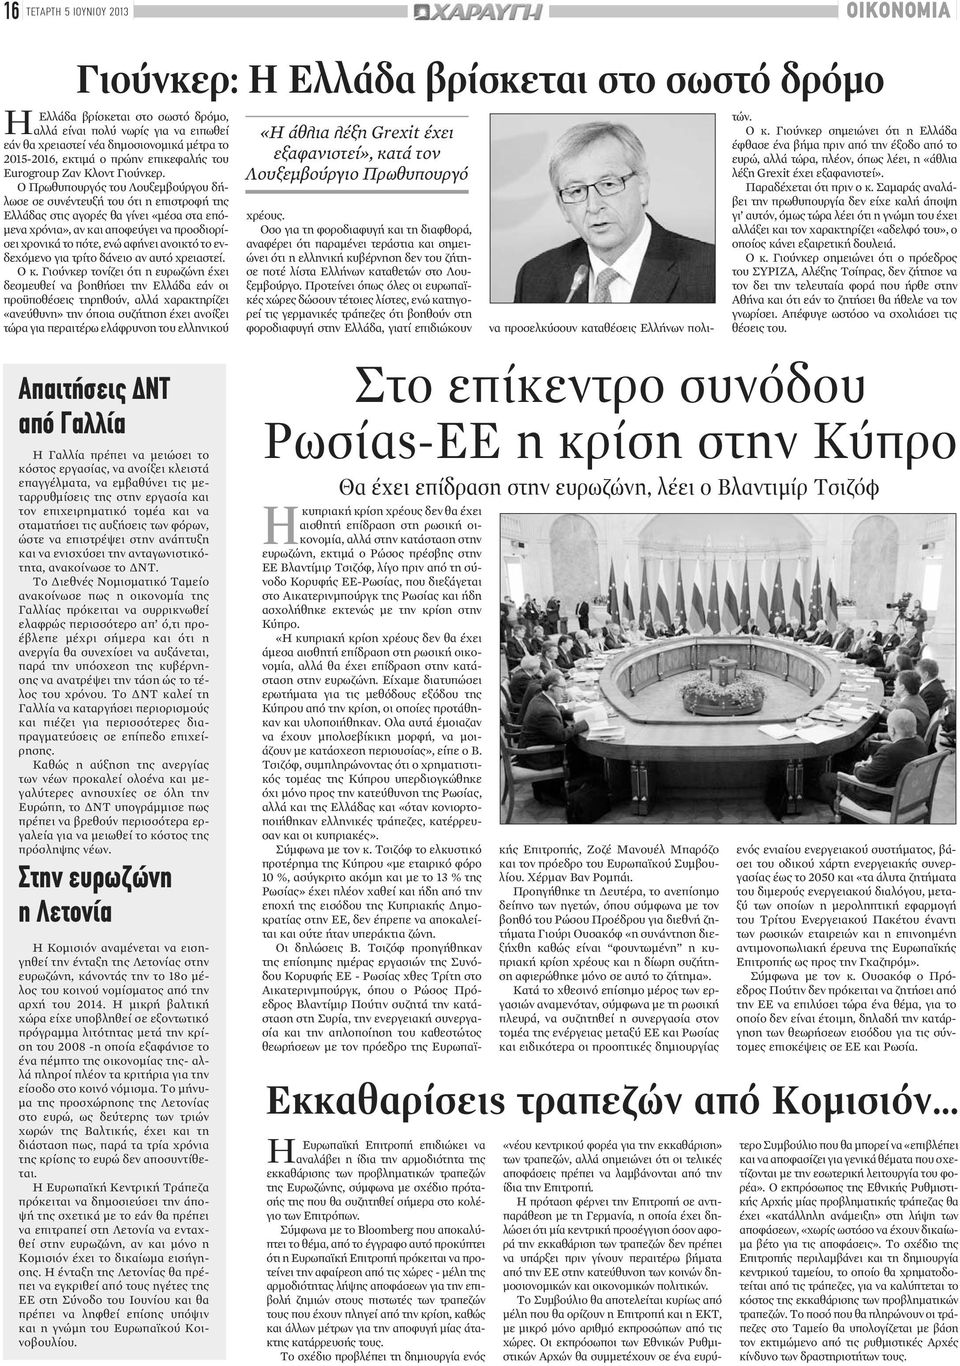 Ο Πρωθυπουργός του Λουξεμβούργου δήλωσε σε συνέντευξή του ότι η επιστροφή της Ελλάδας στις αγορές θα γίνει «μέσα στα επόμενα χρόνια», αν και αποφεύγει να προσδιορίσει χρονικά το πότε, ενώ αφήνει